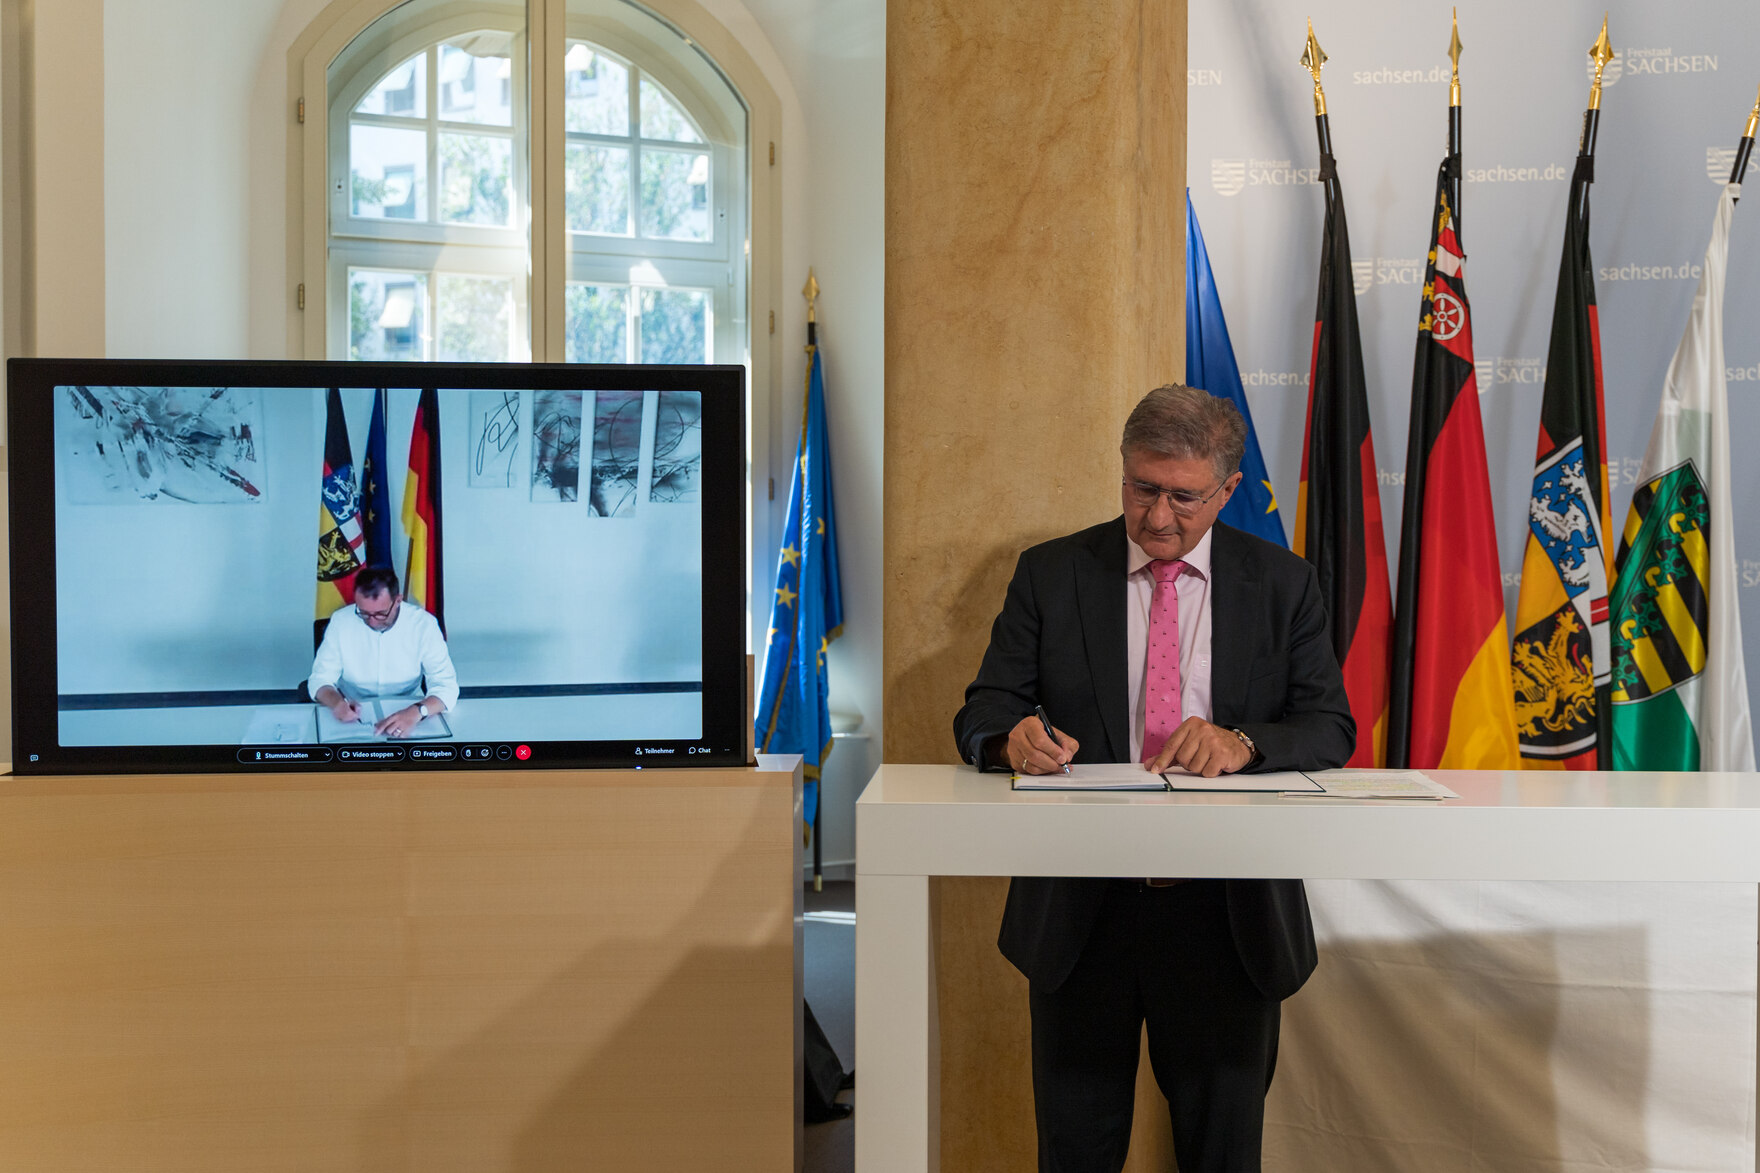 Staatssekretär Popp unterzeichnet virtuell die Kooperationsvereinbarung zur Online-Wache